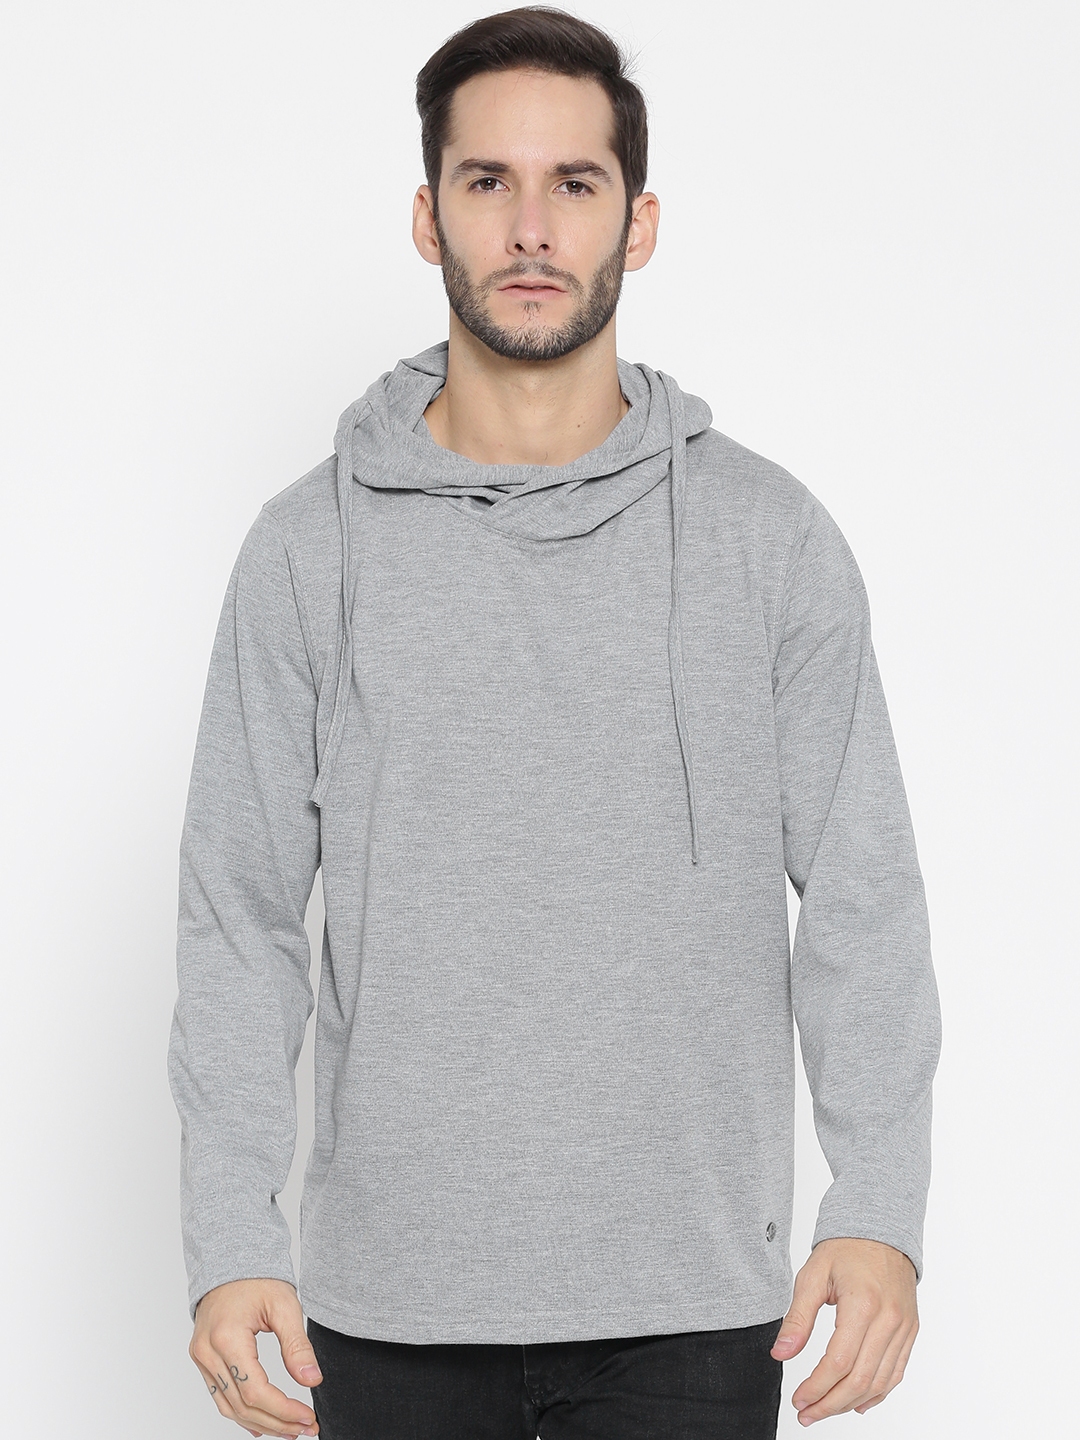 Buy Roadster Men Grey Melange Solid Hood T Shirt - Tshirts for Men ...